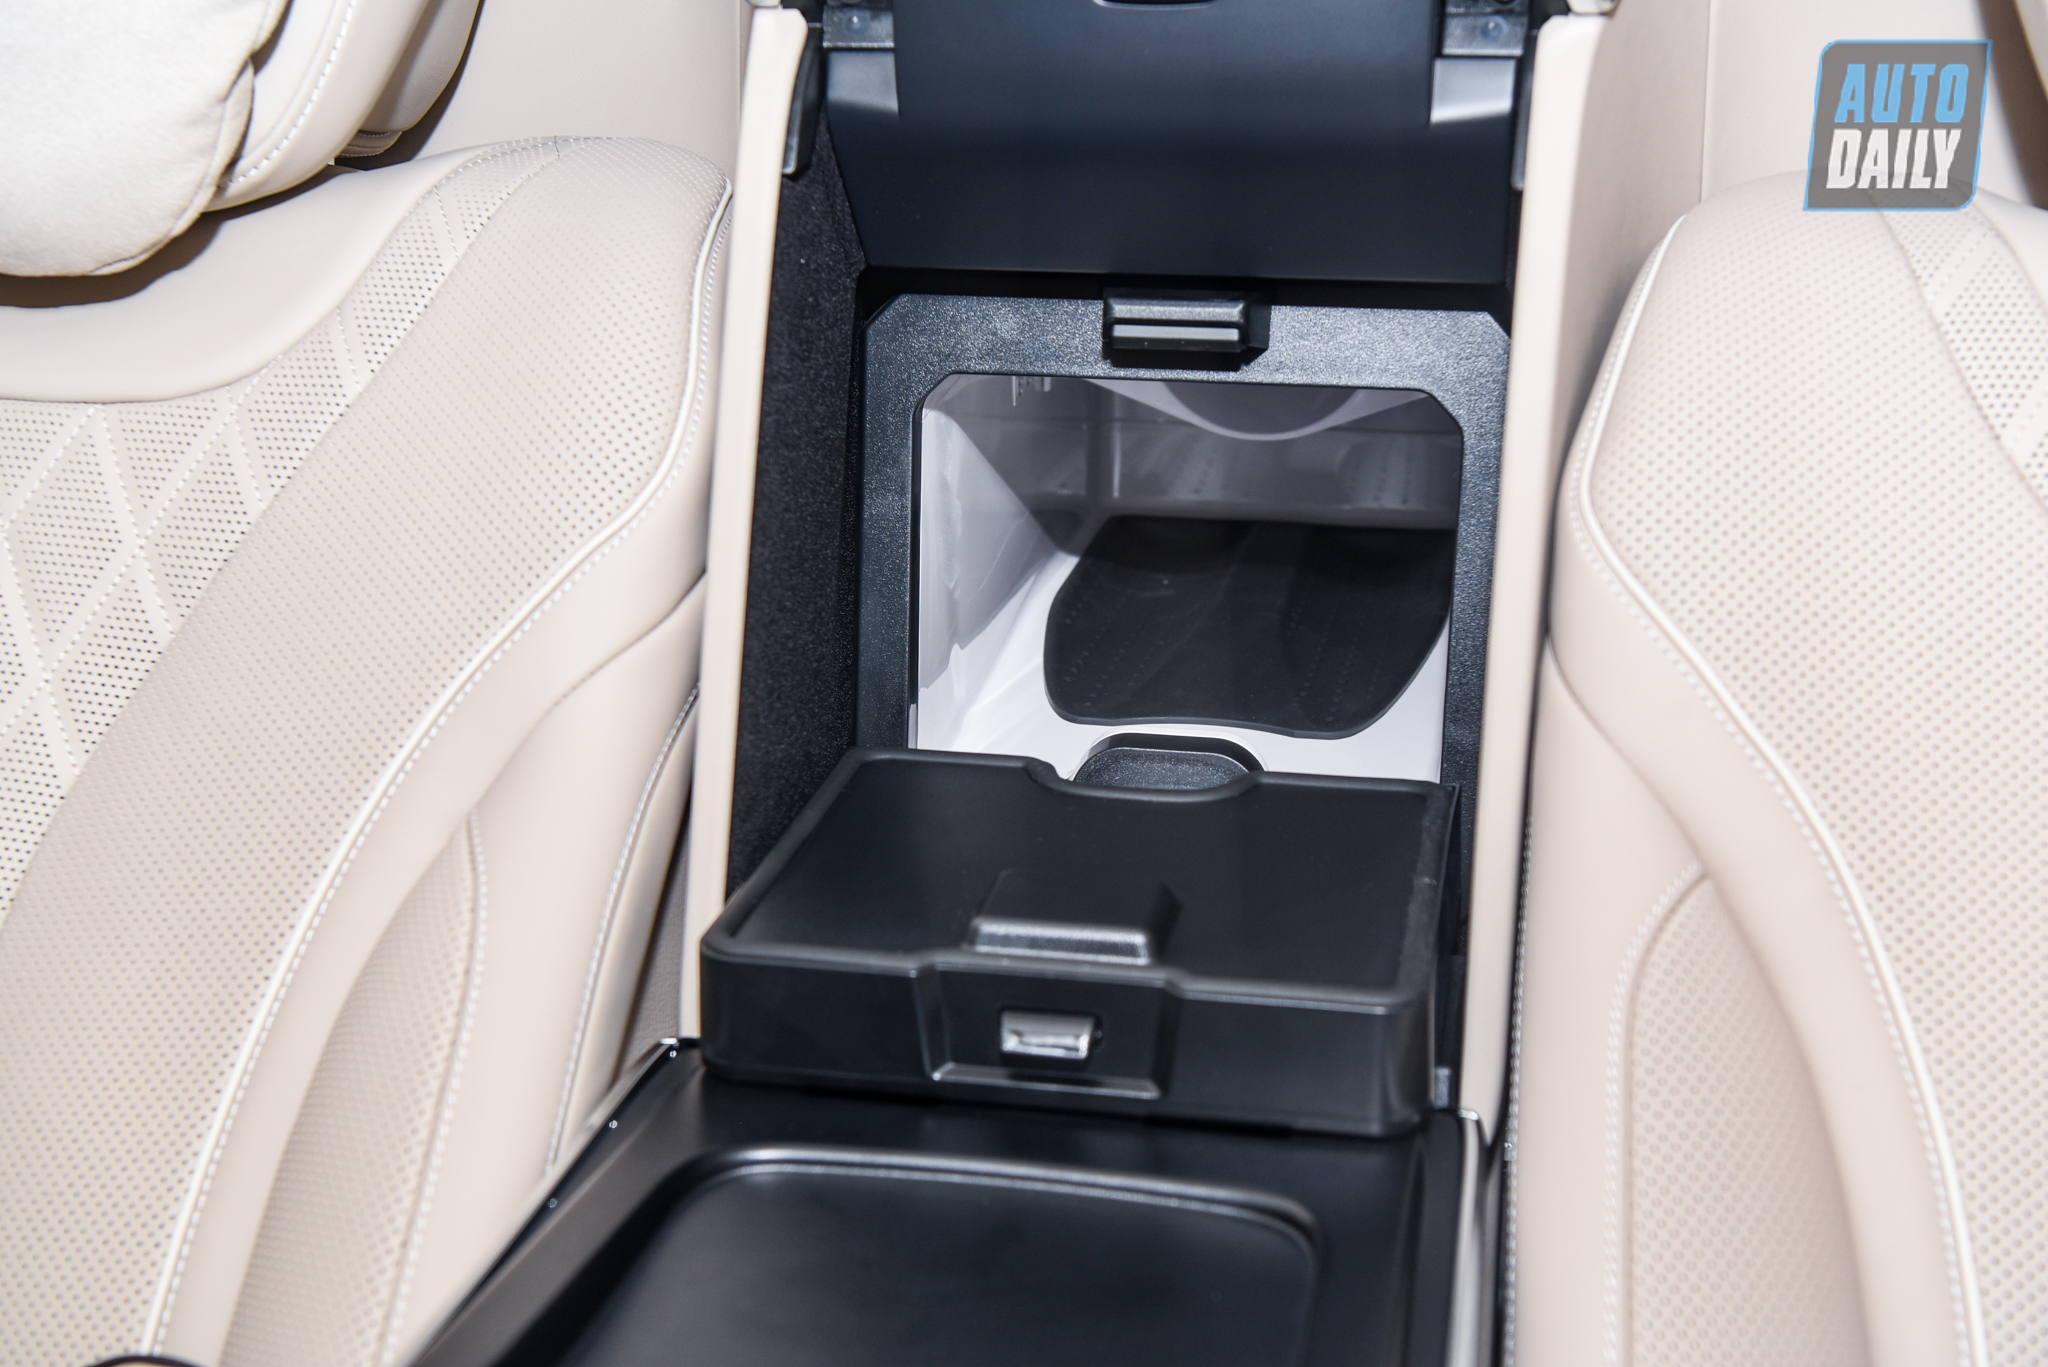 Limousine siêu sang cho 'Chủ tịch' Mercedes-Maybach S650 Pullman đẳng cấp cỡ nào? dsc-0911.jpg